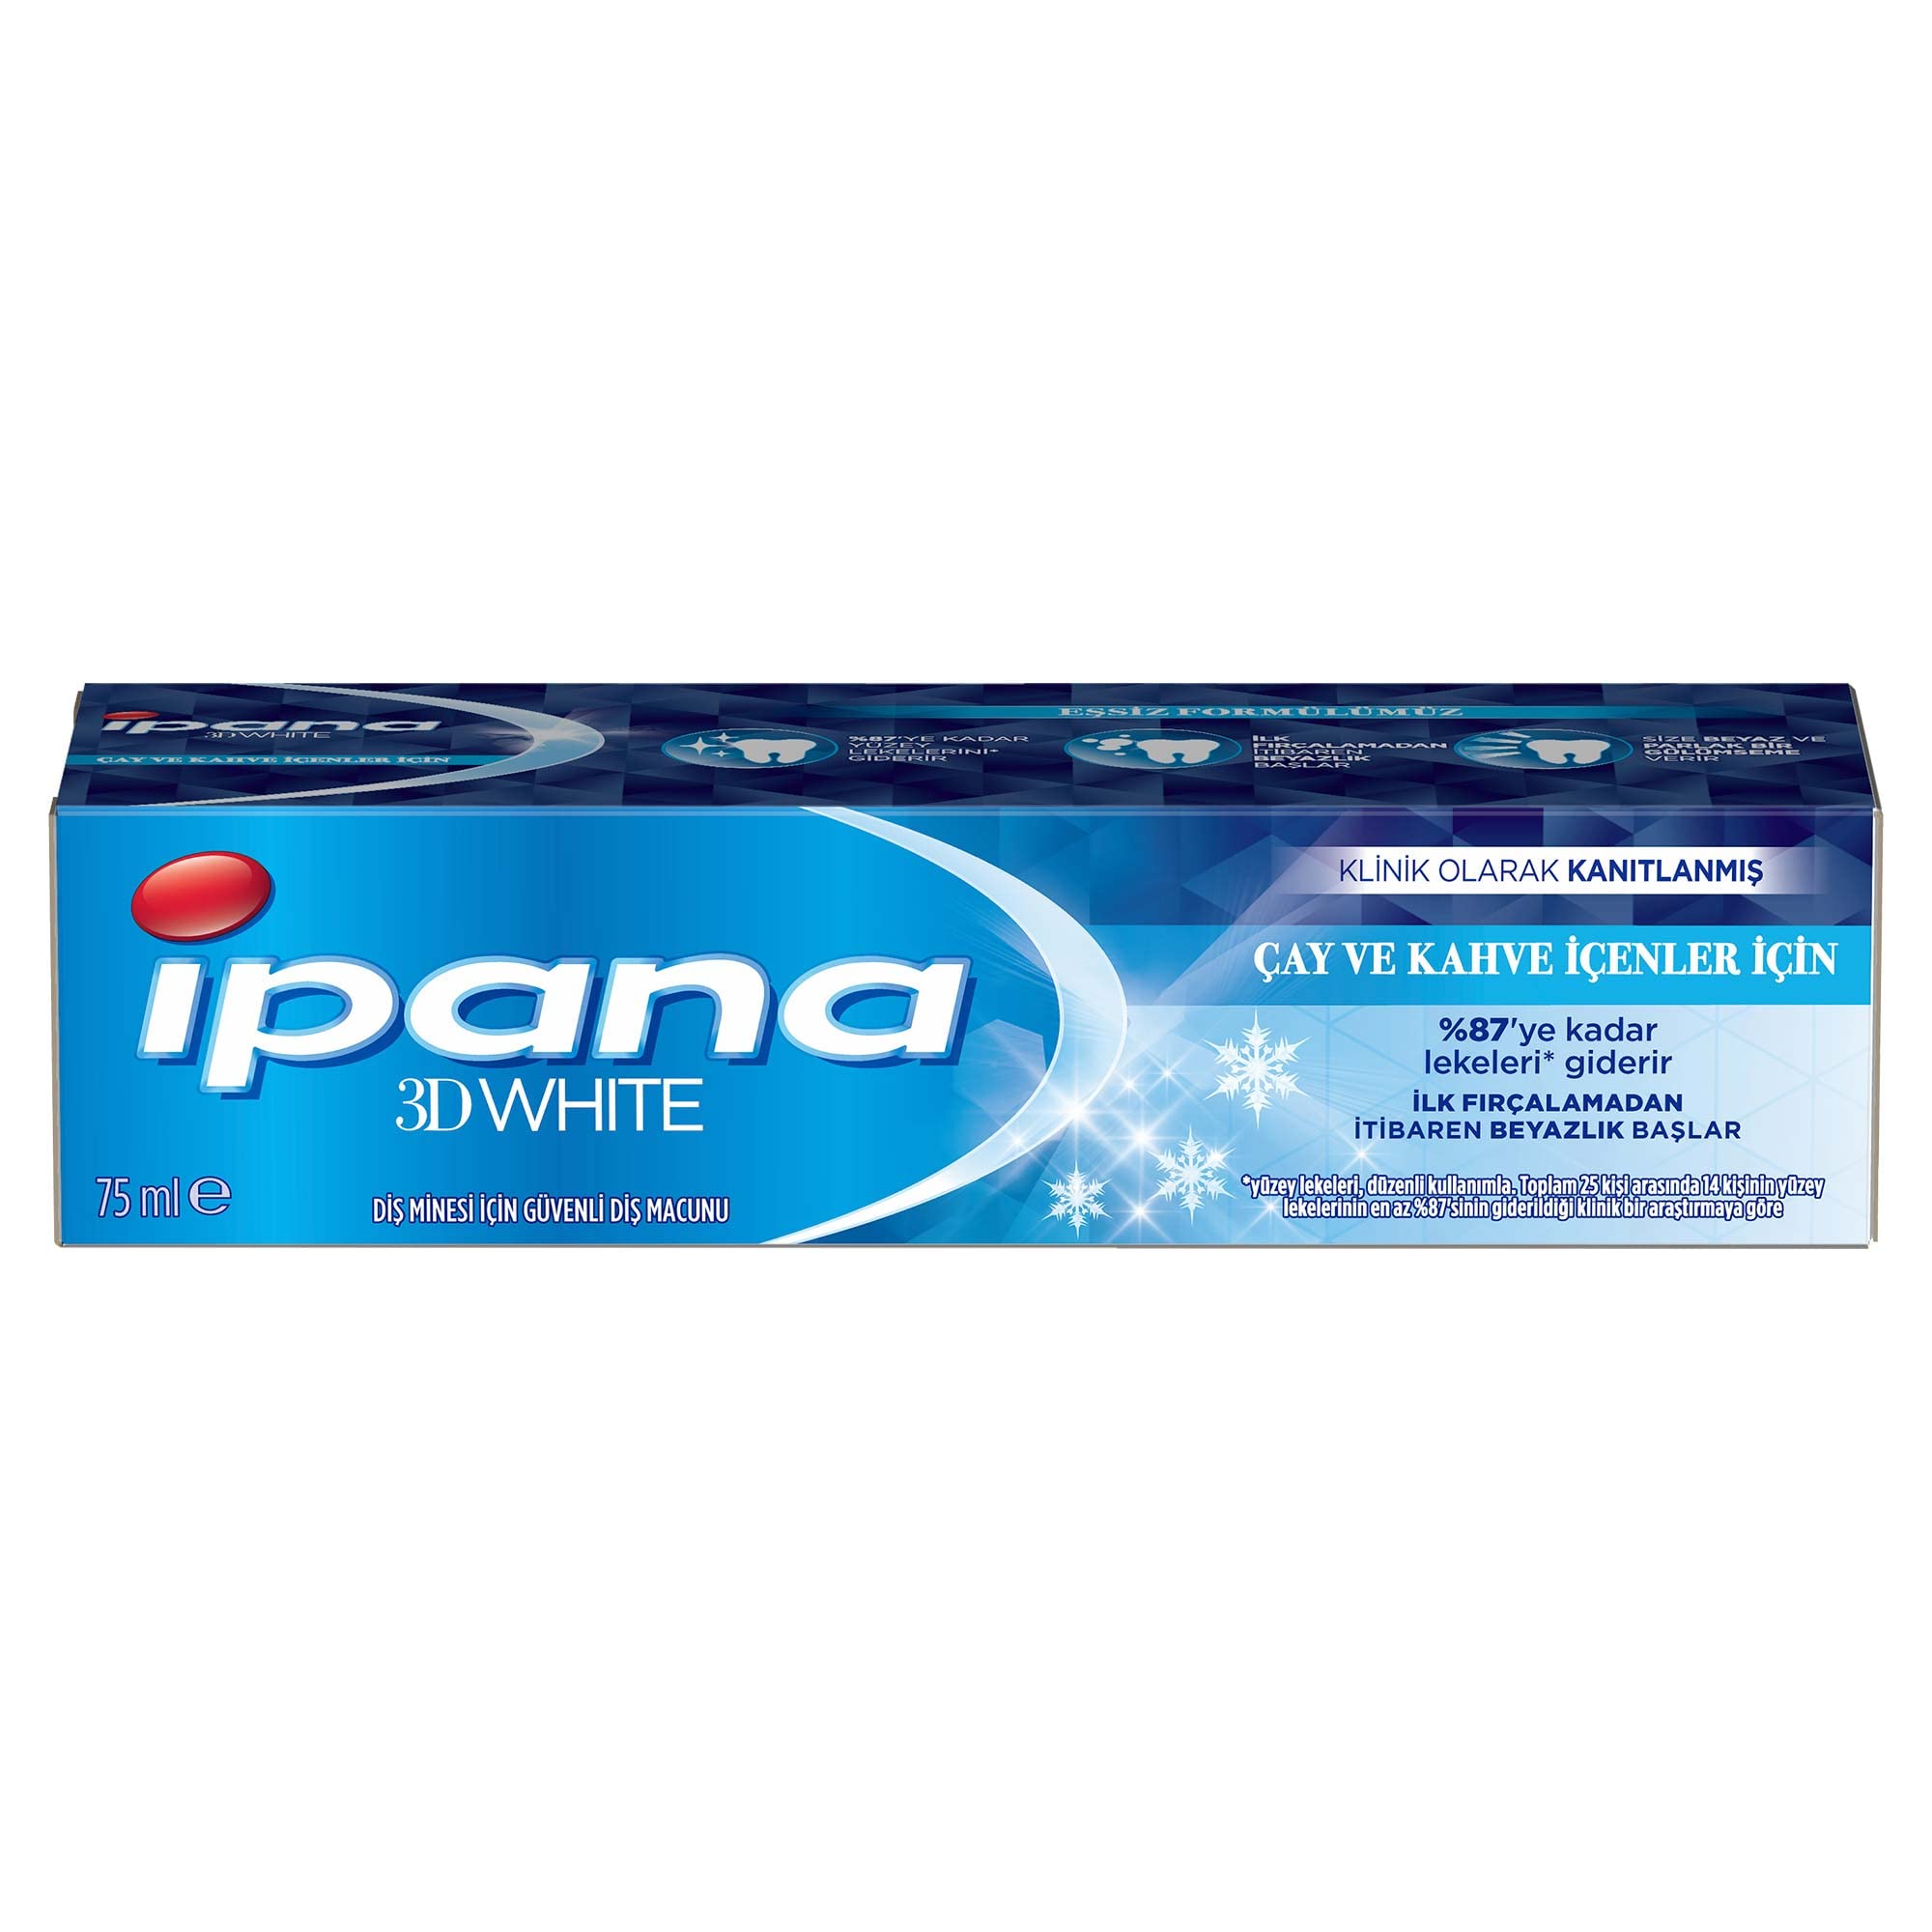 Ipana 3 Boyutlu Beyazlık Çay & Kahve İçenler için Diş Macunu 75 Ml